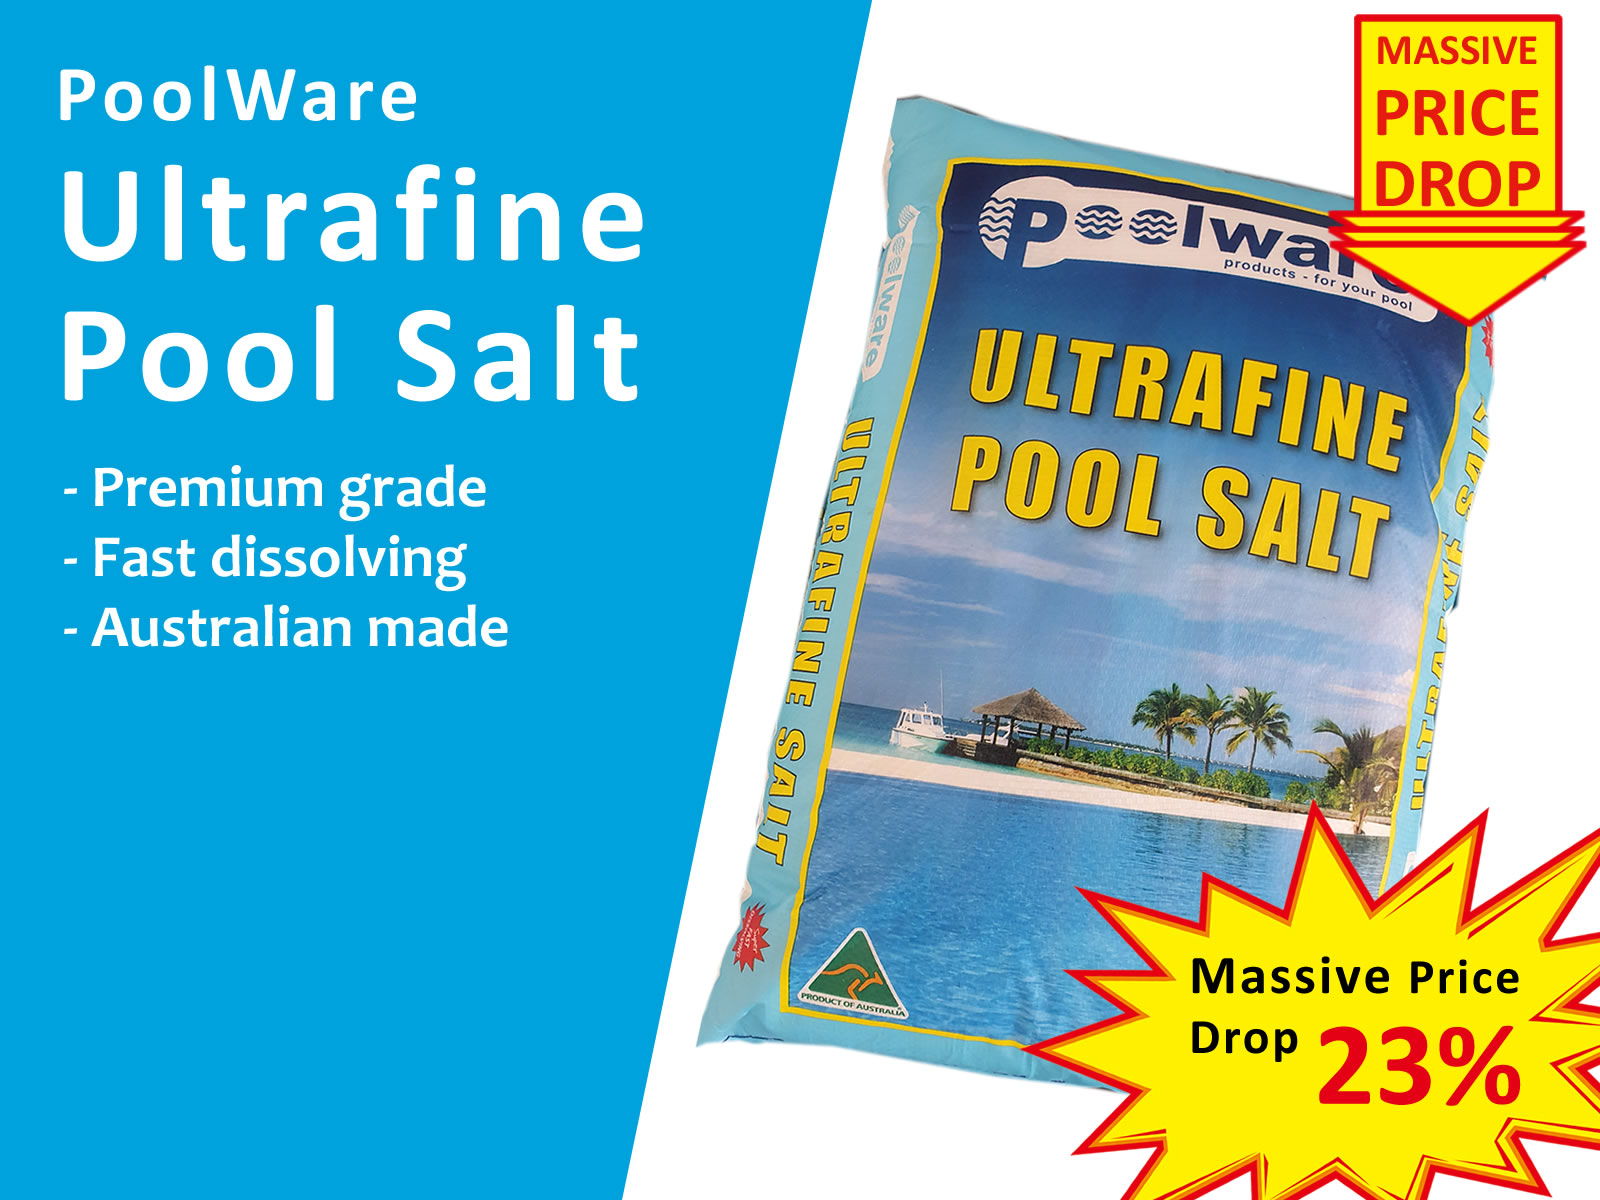 Poolware ultra-fine pool salt